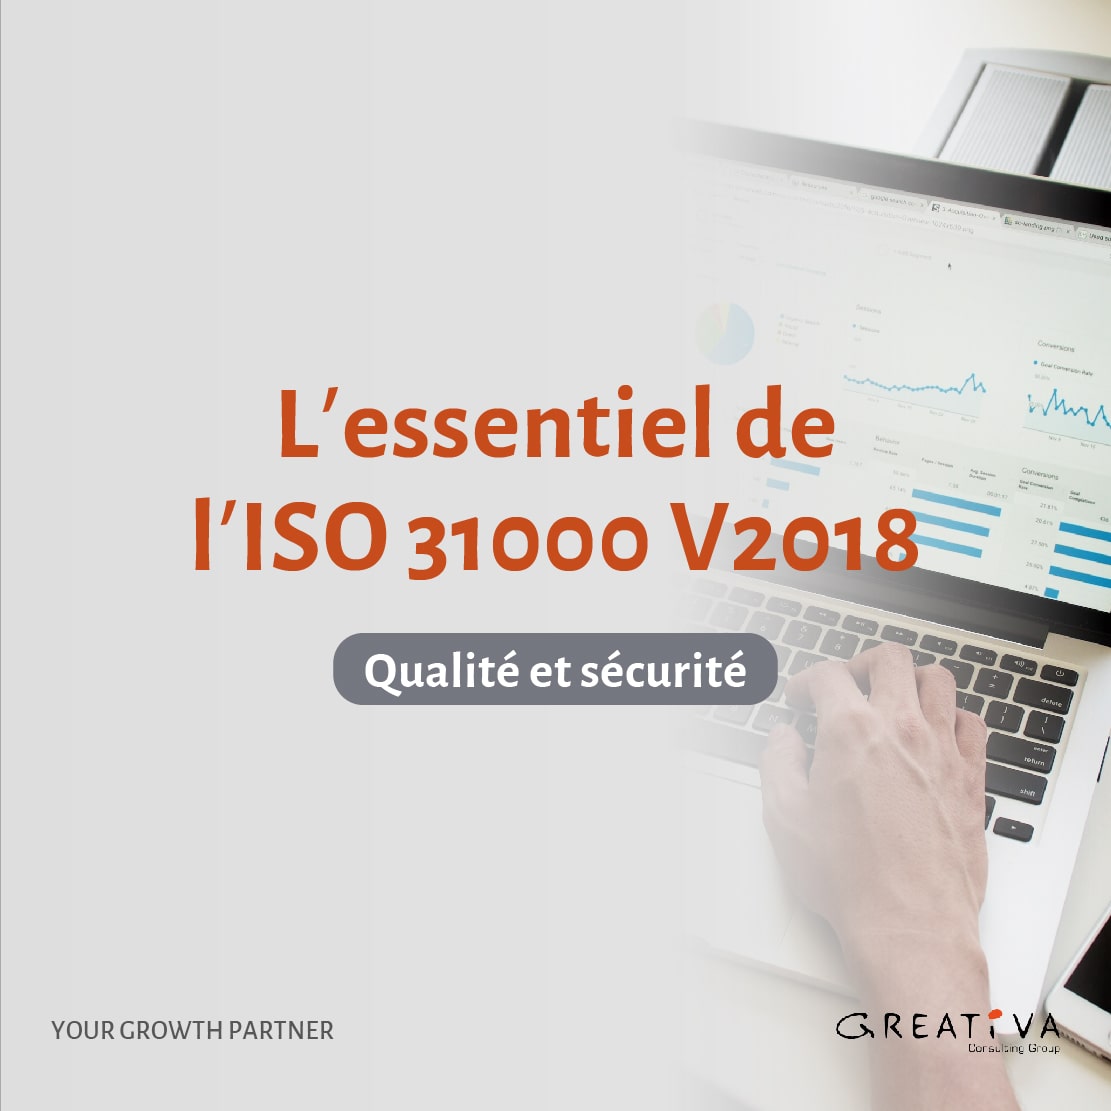 L’essentiel de l’ISO 31000 V2018